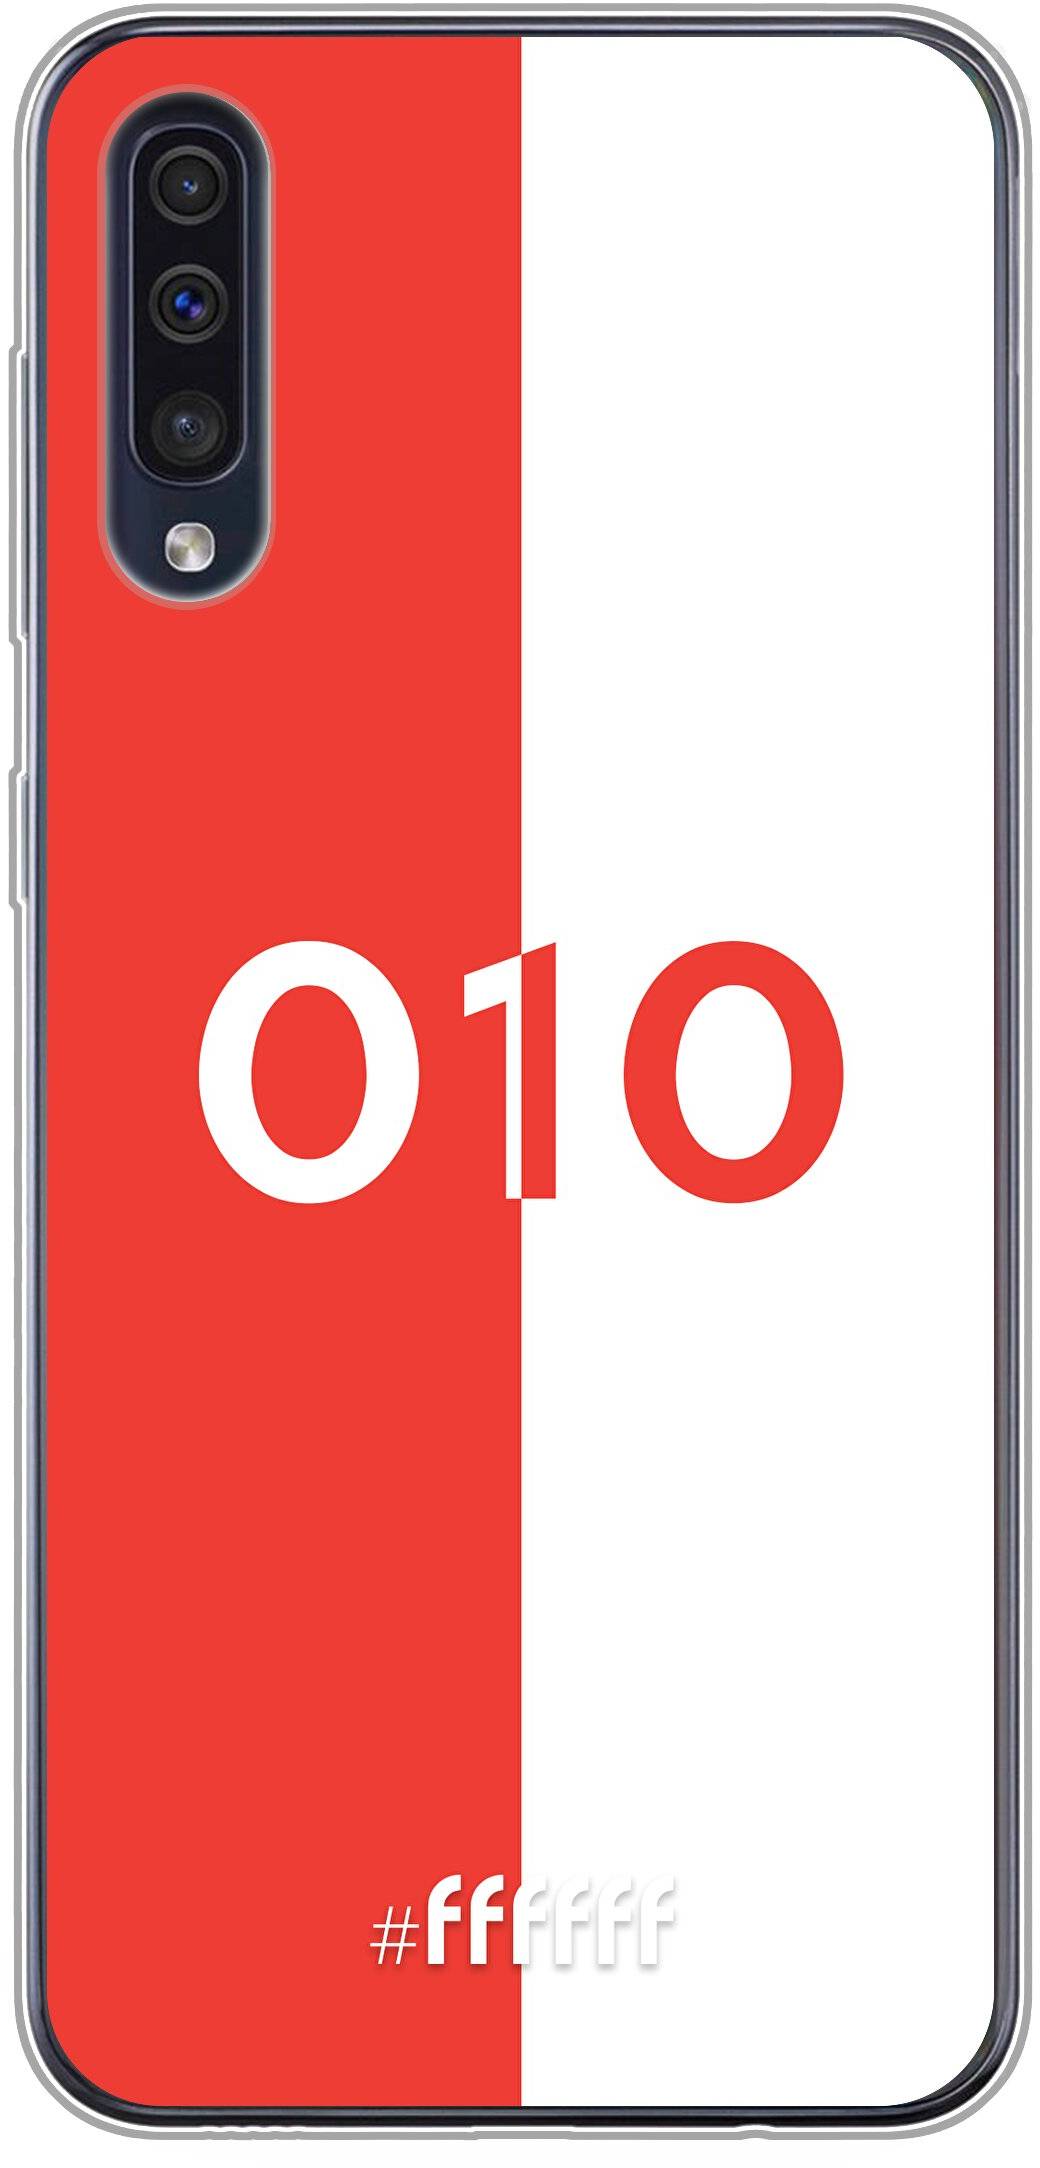 Feyenoord - 010 Galaxy A50s